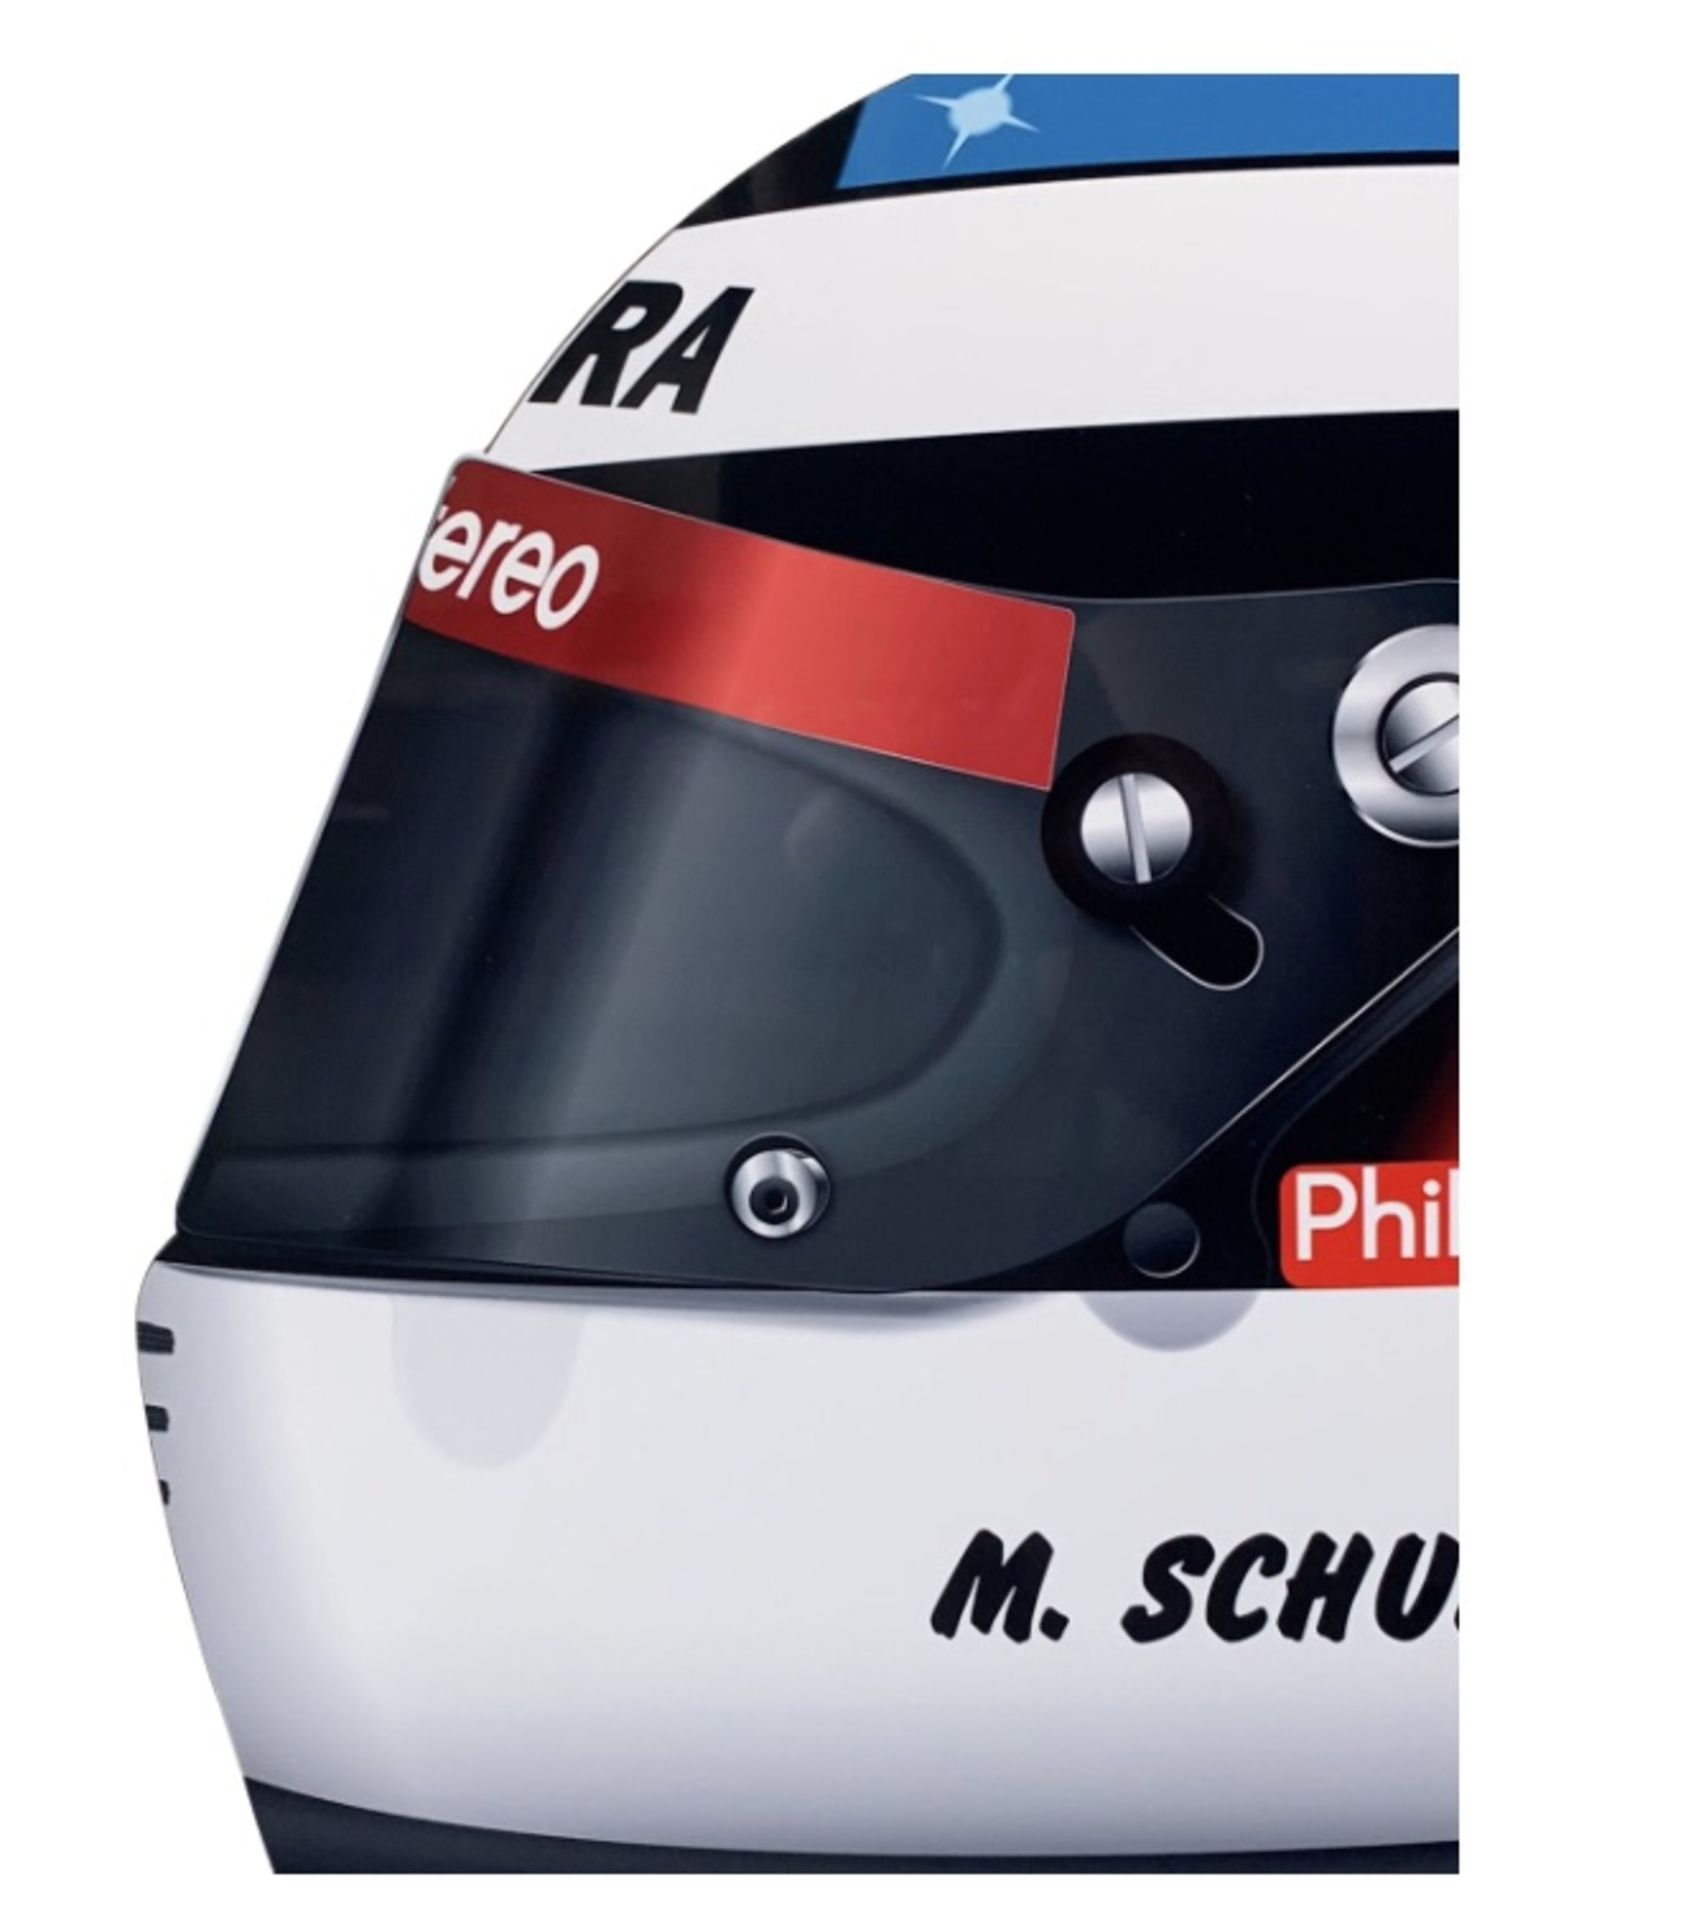 Michael Schumacher 1991 F1 Helmet Aluminum Garage Wall Display - Image 2 of 6